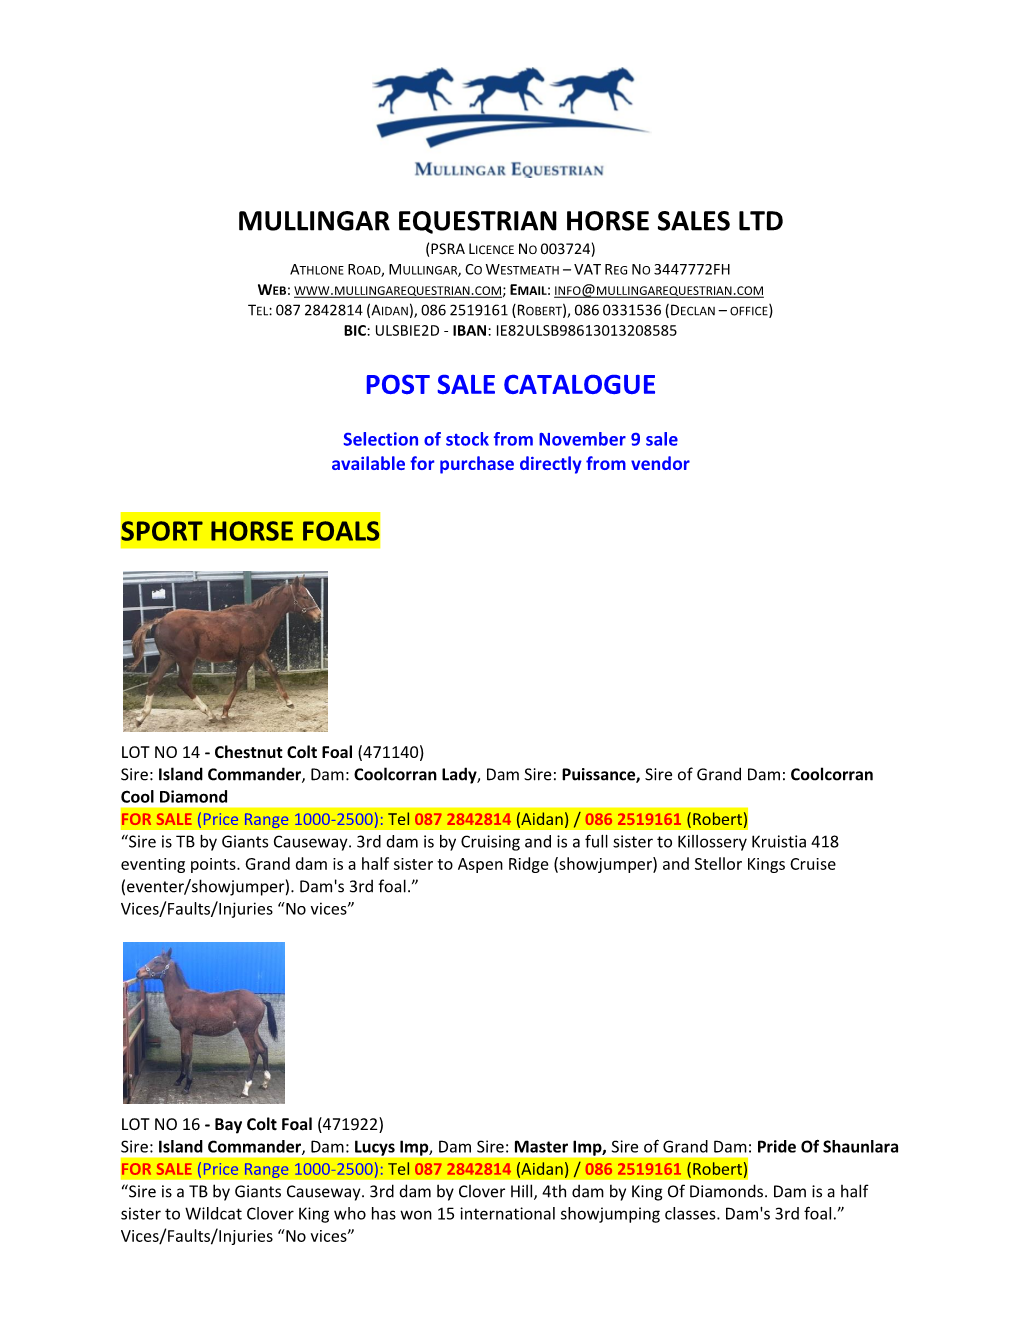 Mullingar Equestrian Horse Sales Ltd Post Sale Catalogue Sport Horse Foals